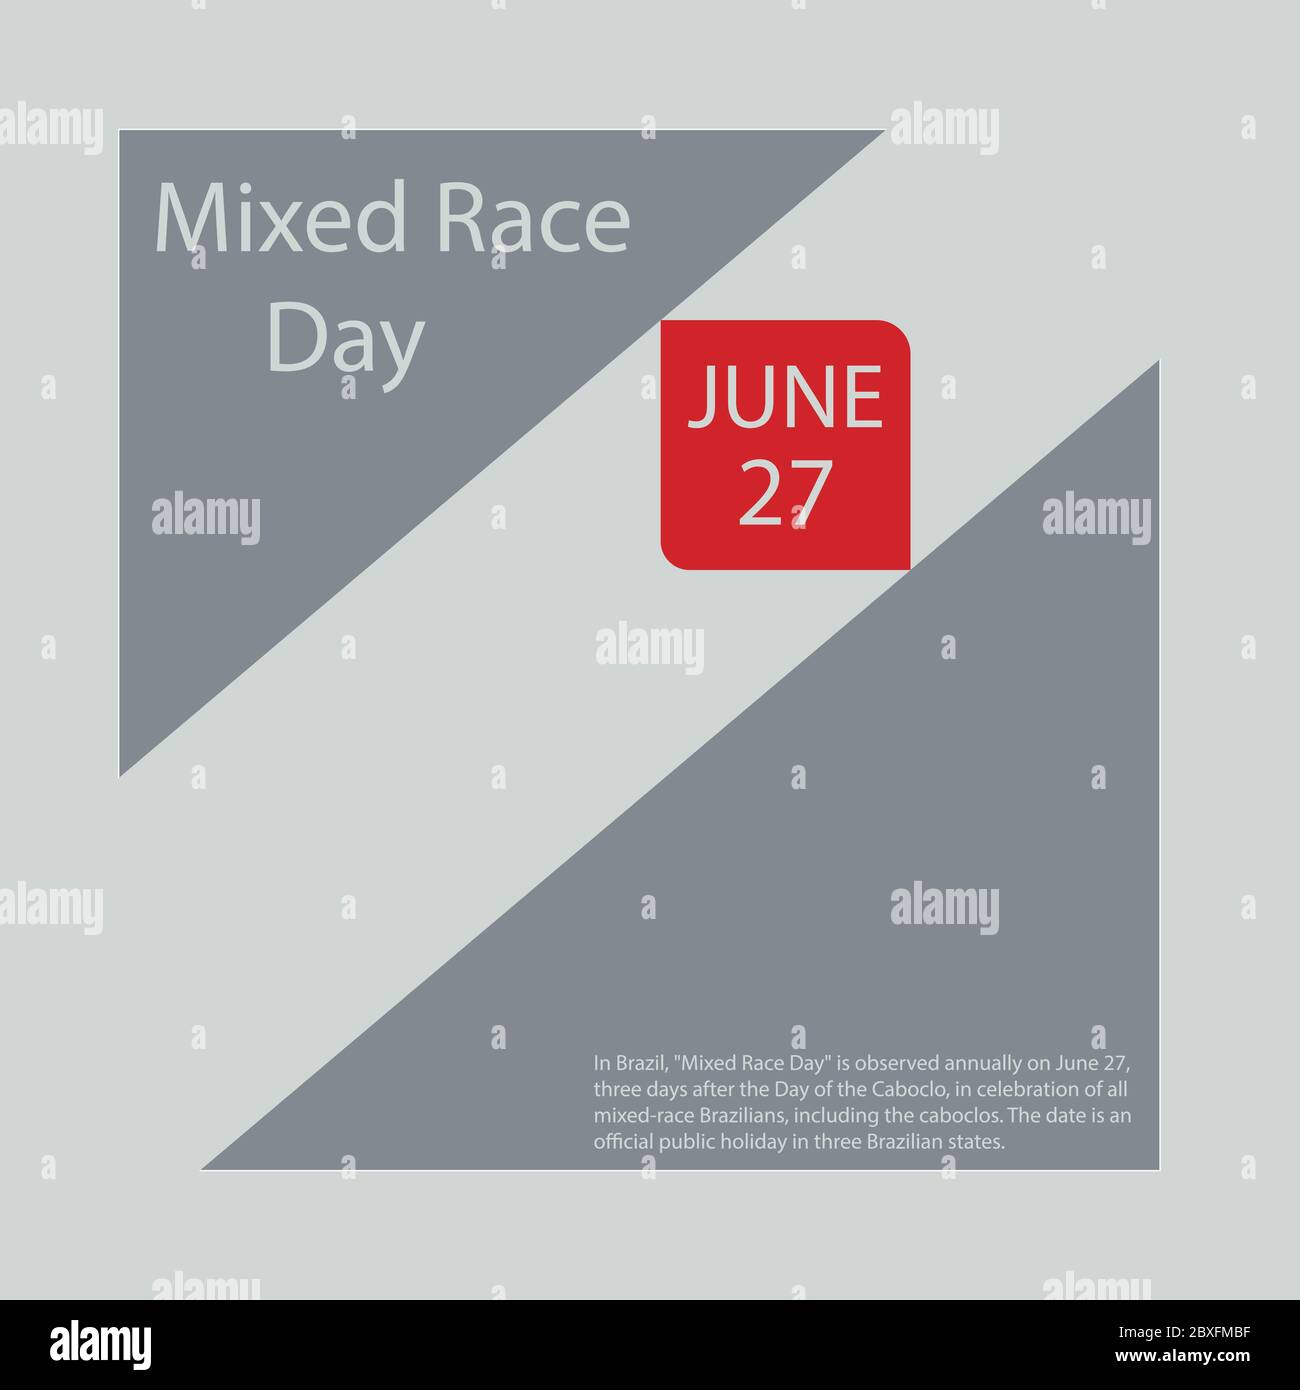 In Brasile, il 'Mixed Race Day' viene osservato annualmente il 27 giugno, tre giorni dopo il giorno del Caboclo, in celebrazione di tutti i brasiliani misti, inc Illustrazione Vettoriale